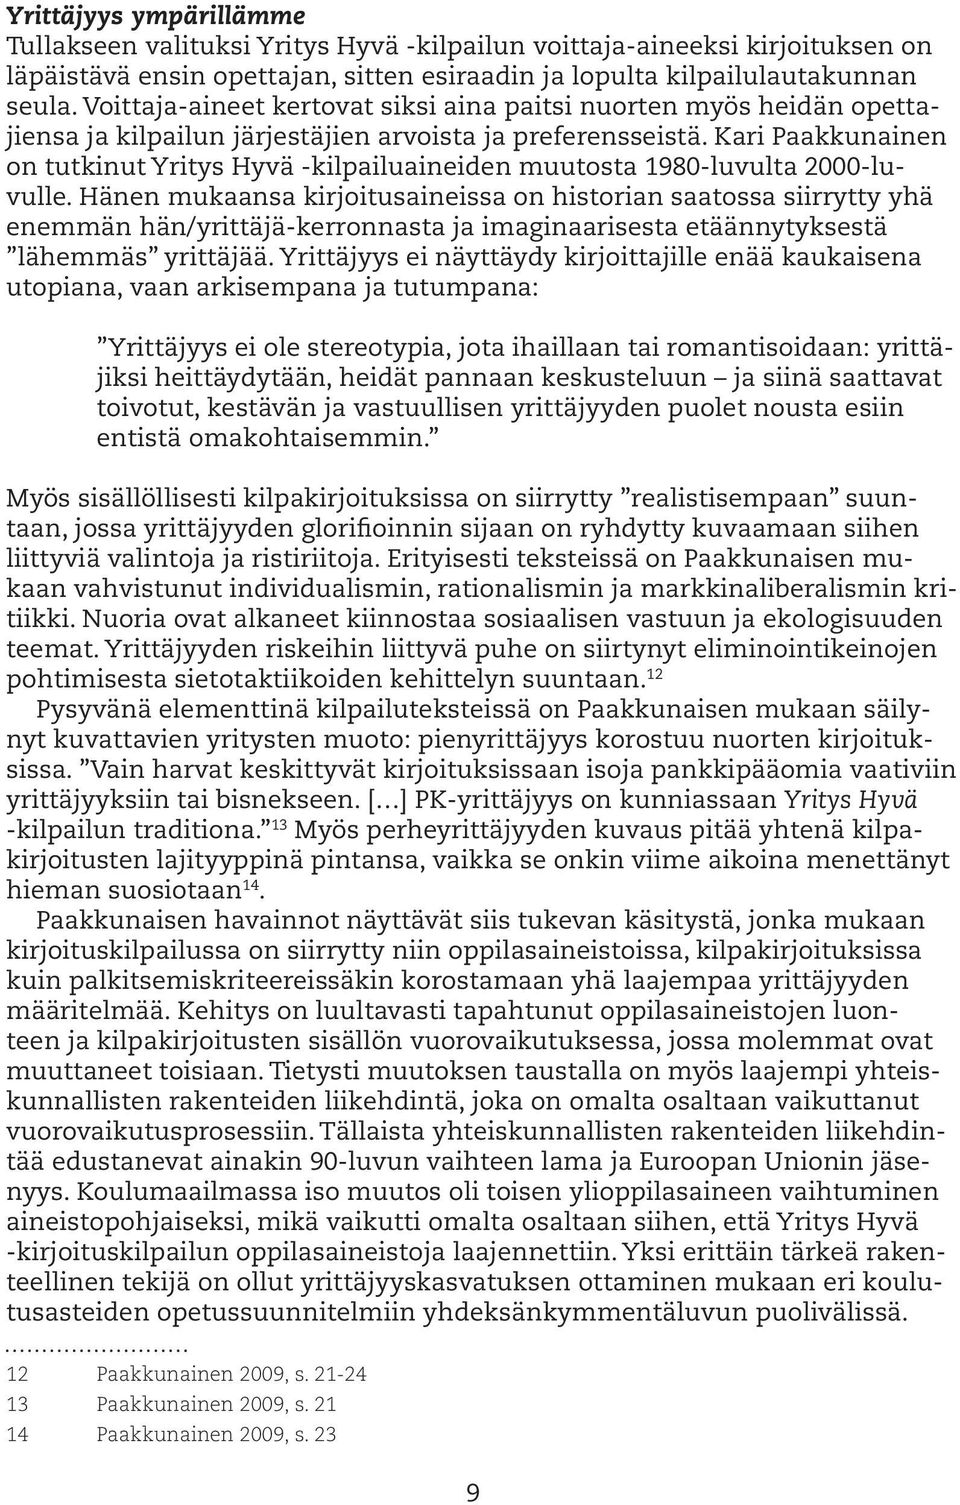 Kari Paakkunainen on tutkinut Yritys Hyvä -kilpailuaineiden muutosta 1980-luvulta 2000-luvulle.